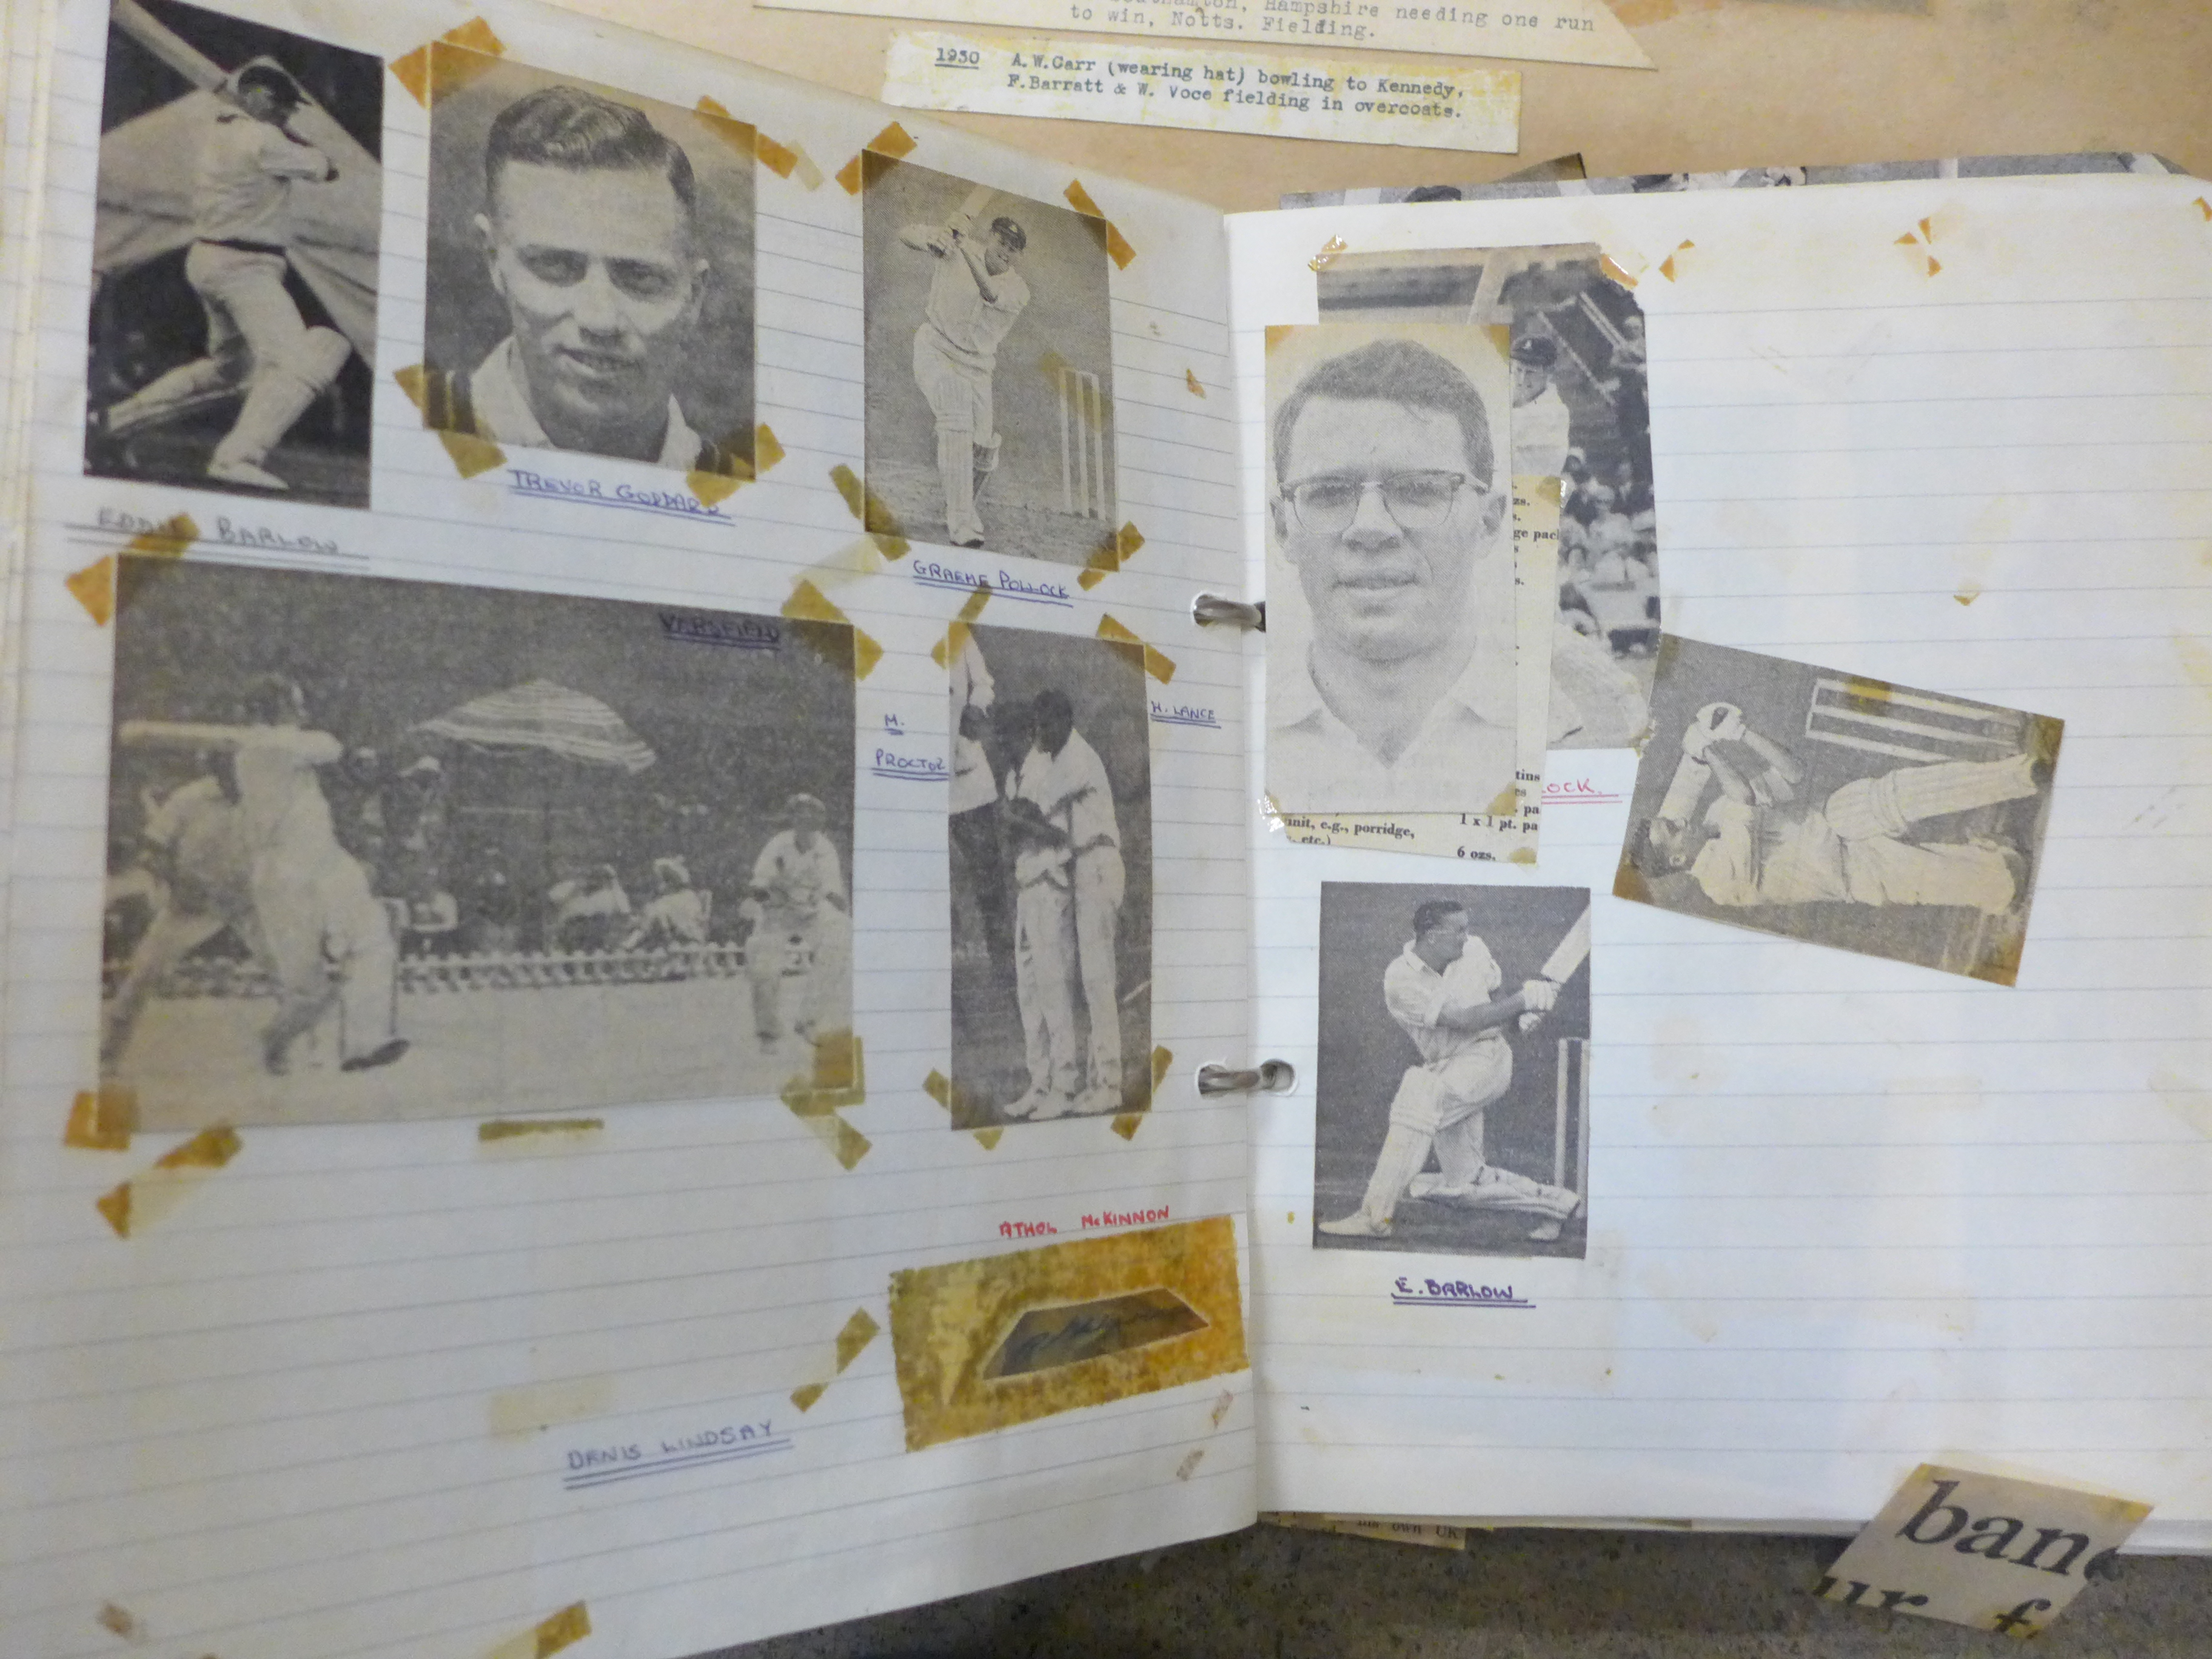 Cricket ephemera and scrap albums with autographs including Larwood, Boycott, Subba Row - Image 14 of 19